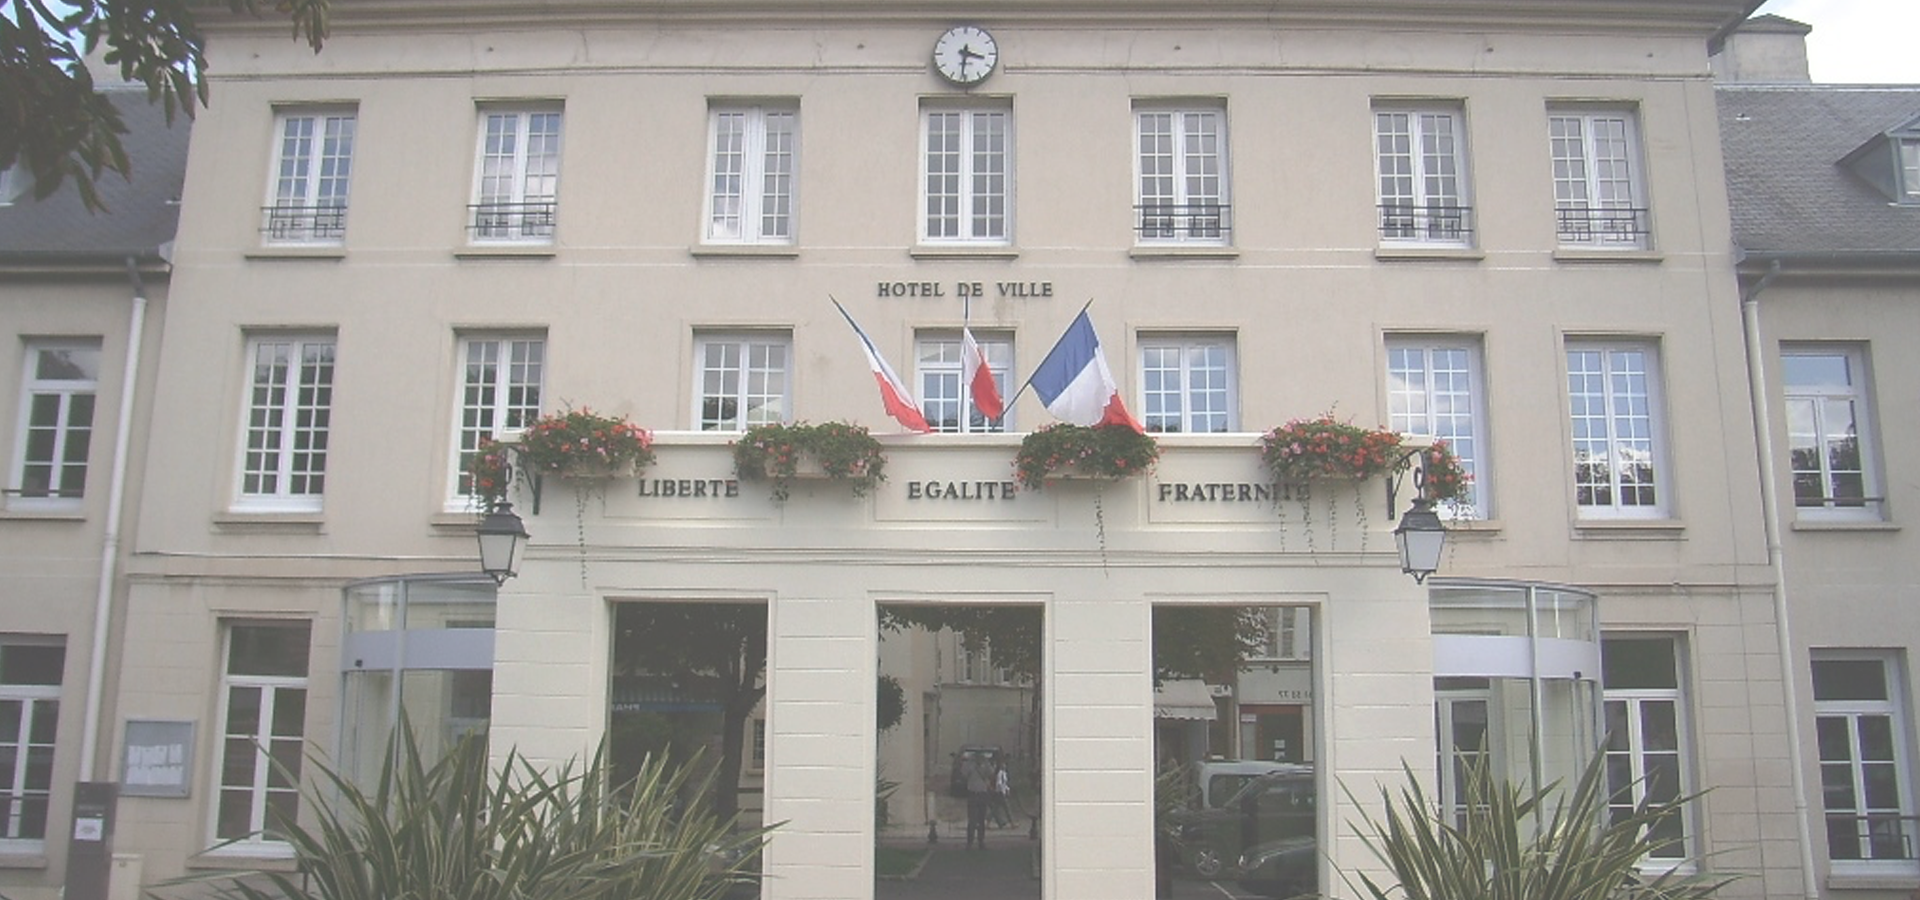 <b>Palaiseau, Essonne Département, Île-de-France Region, France</b>